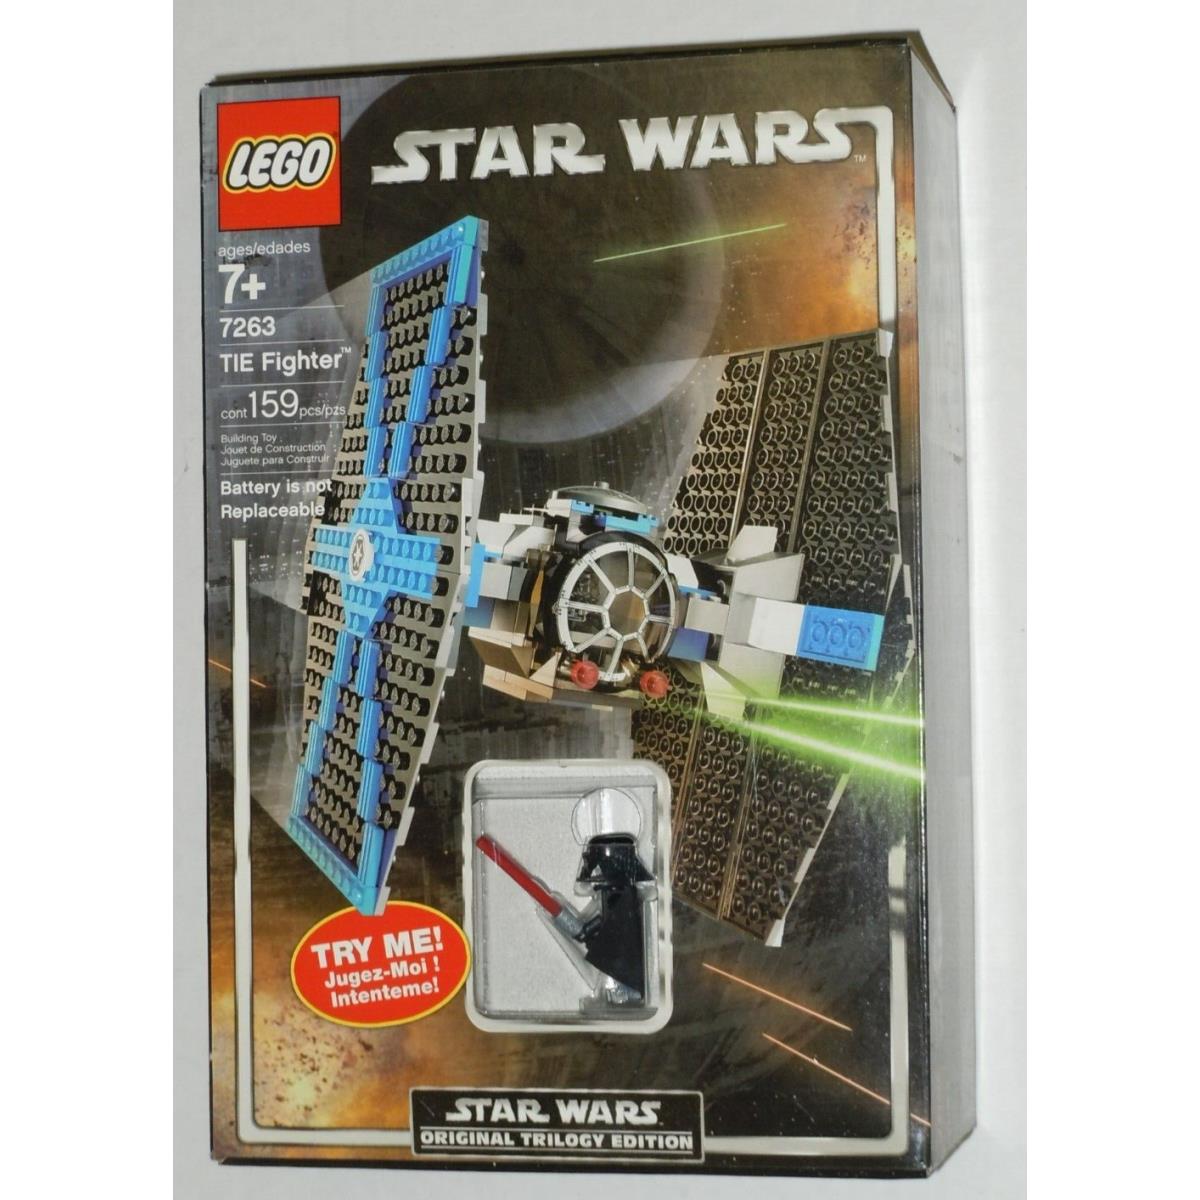 Lego Star Wars Tie Fighter Darth Vader Set 7263 Lightup Vader Minifig